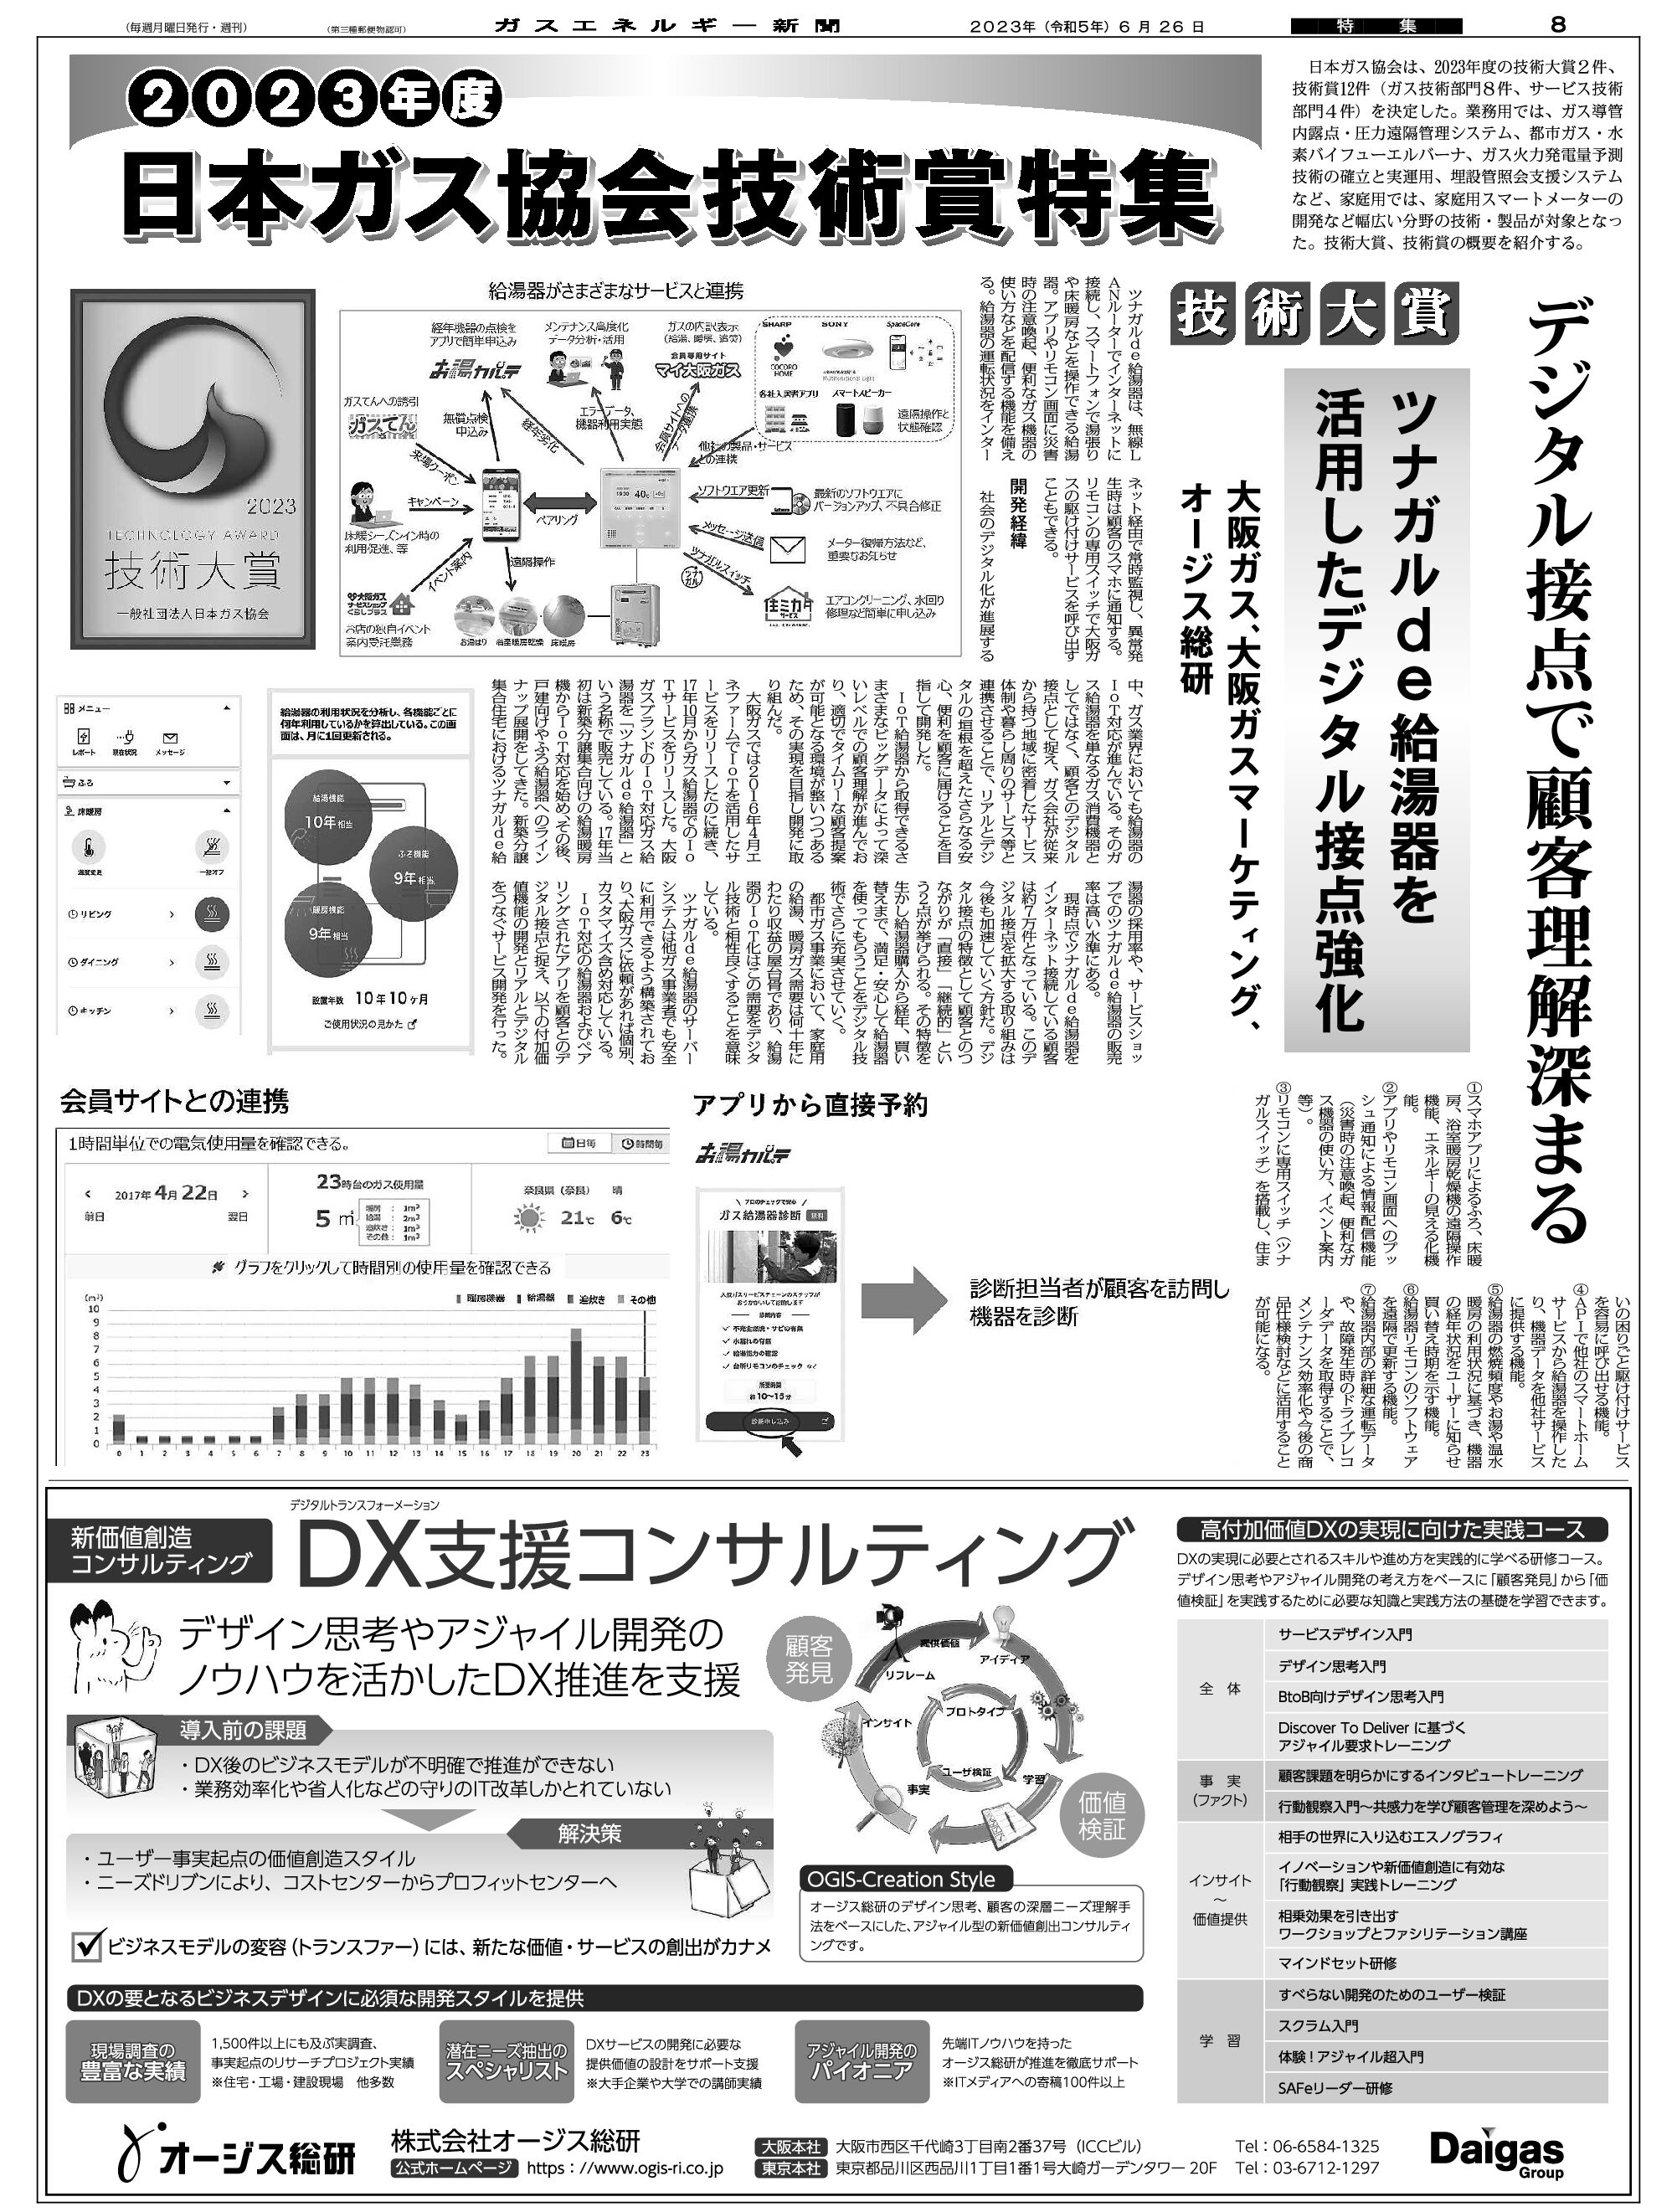 【特集】2023年度日本ガス協会技術賞特集